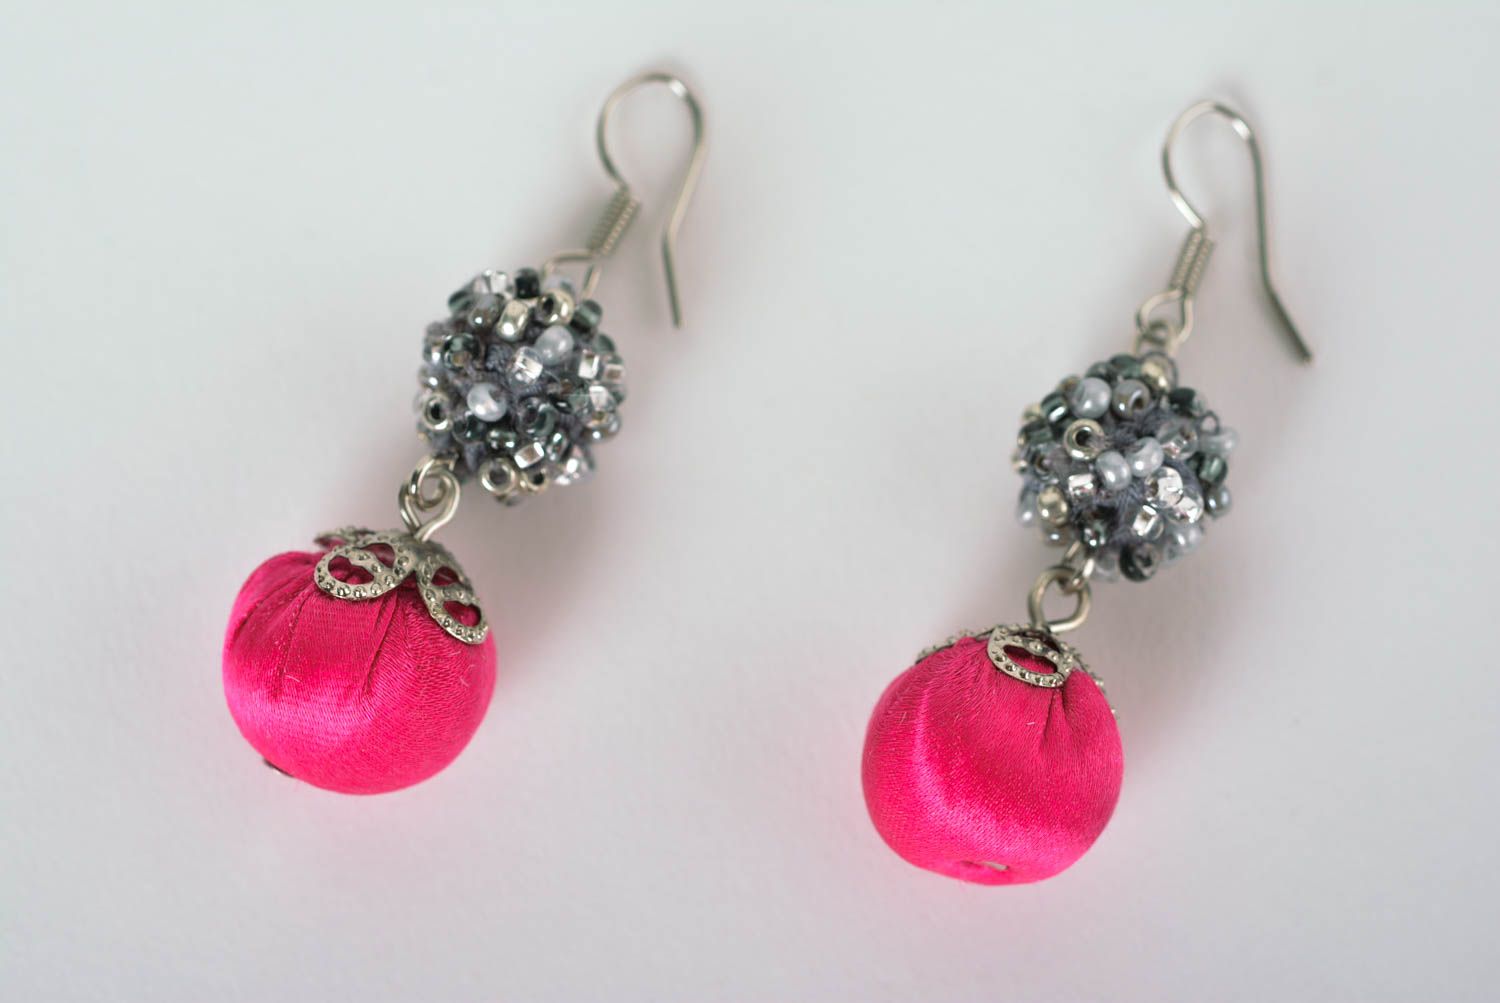 Handmade stylish earrings crimson earrings beaded textile earrings gift for her photo 2